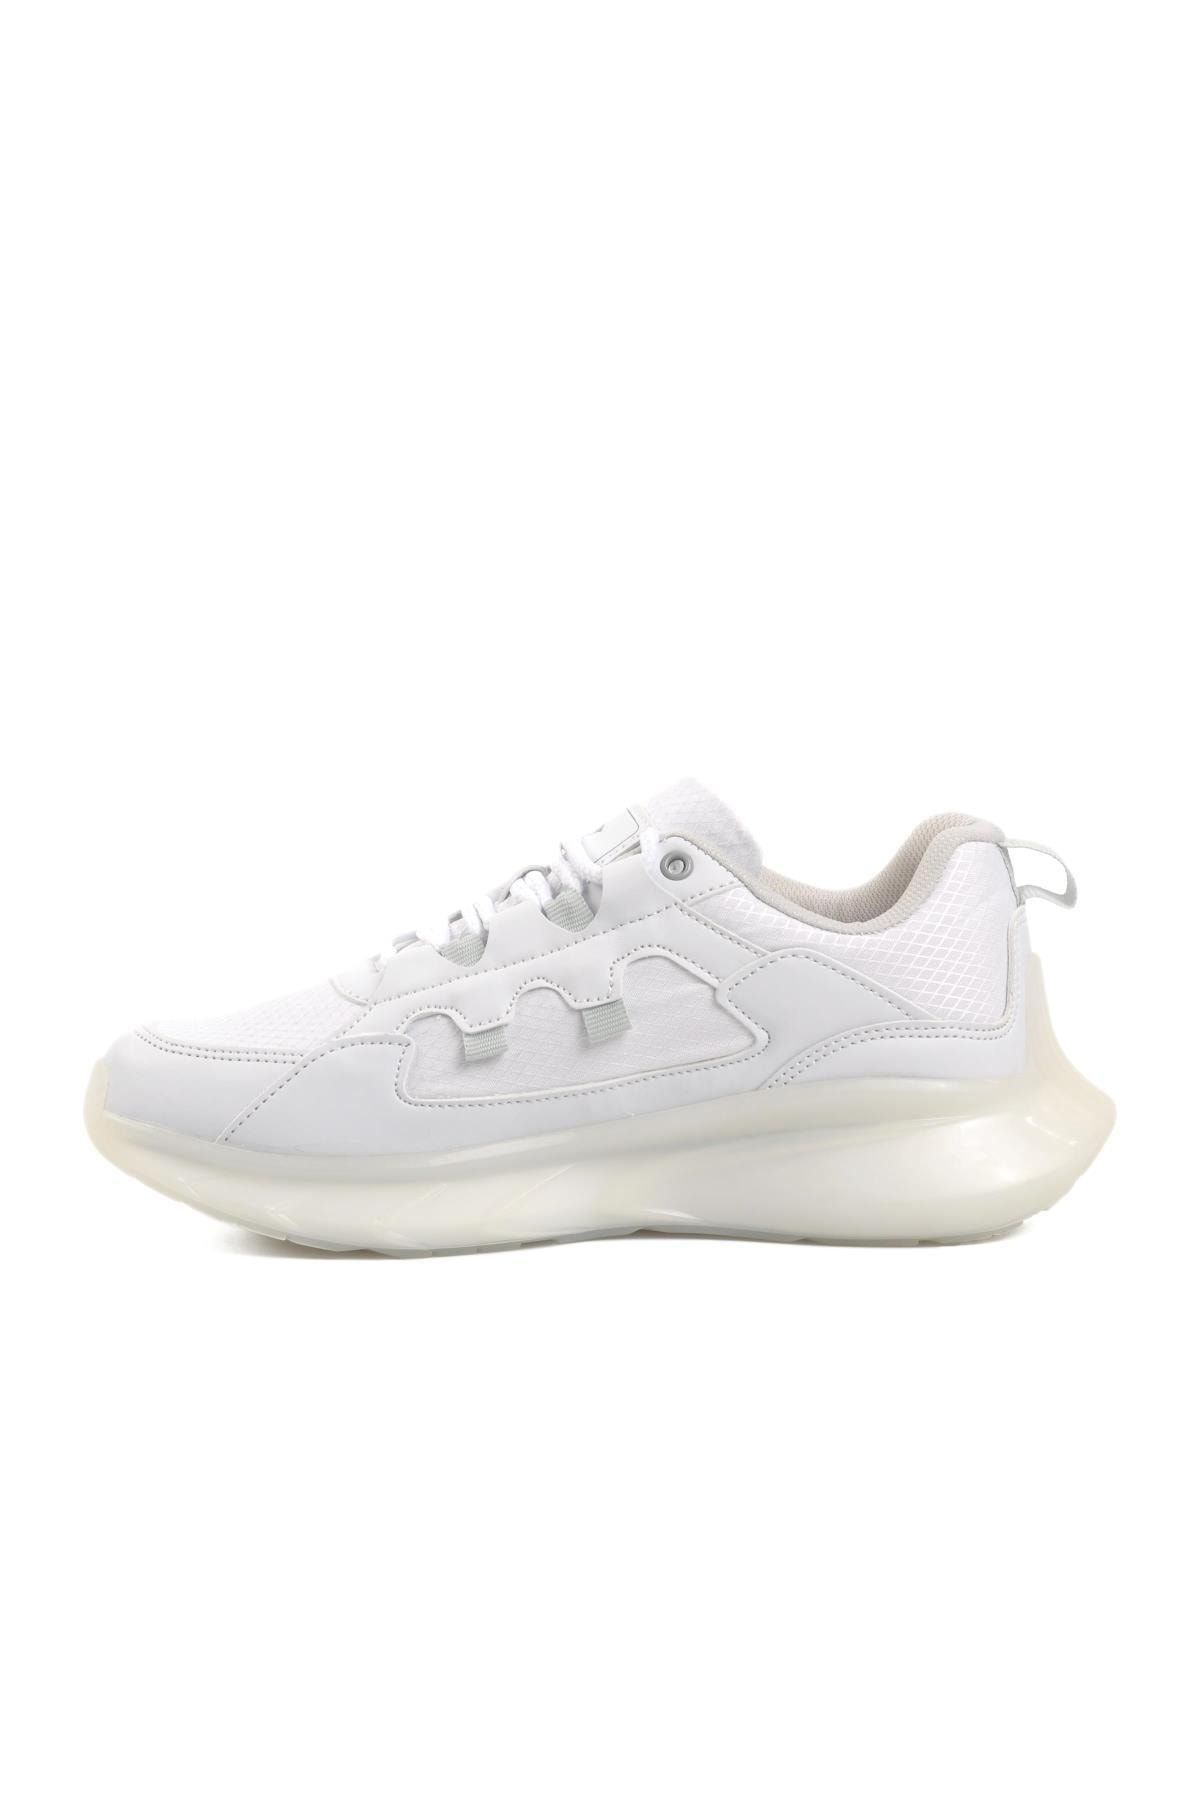 Dunlop Dnp-7274 Beyaz Kadın Spor Ayakkabı